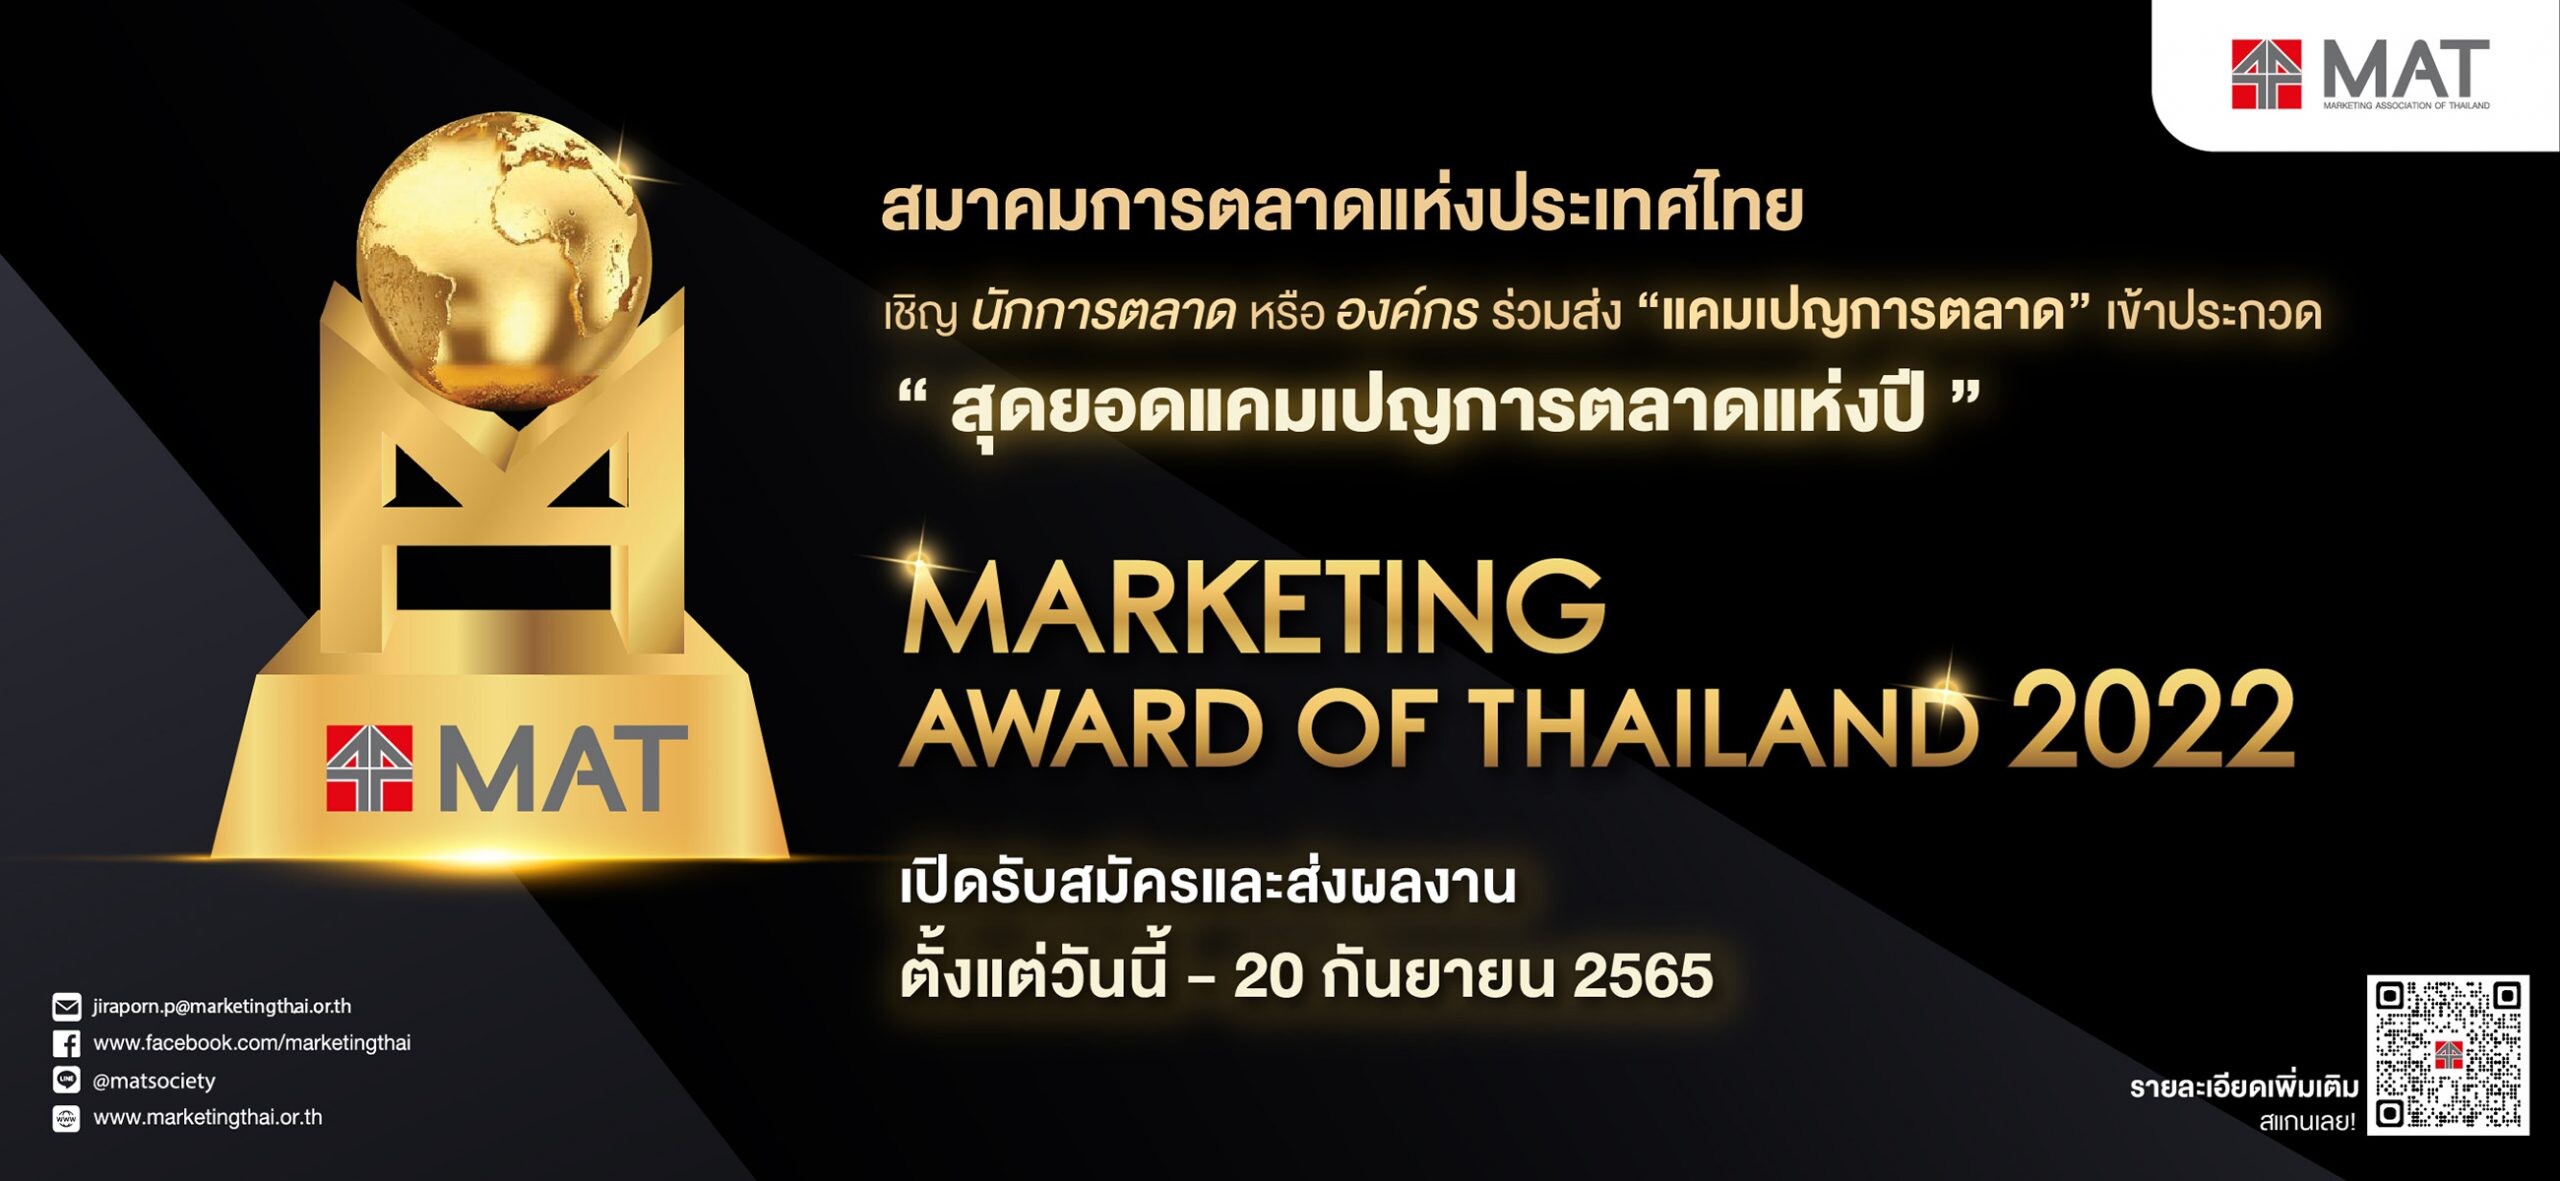 สมาคมการตลาด จัดประกวด "Marketing Award of Thailand" เฟ้นหาสุดยอดแคมเปญการตลาดแห่งปี รับสมัครถึง 20 ก.ย.นี้